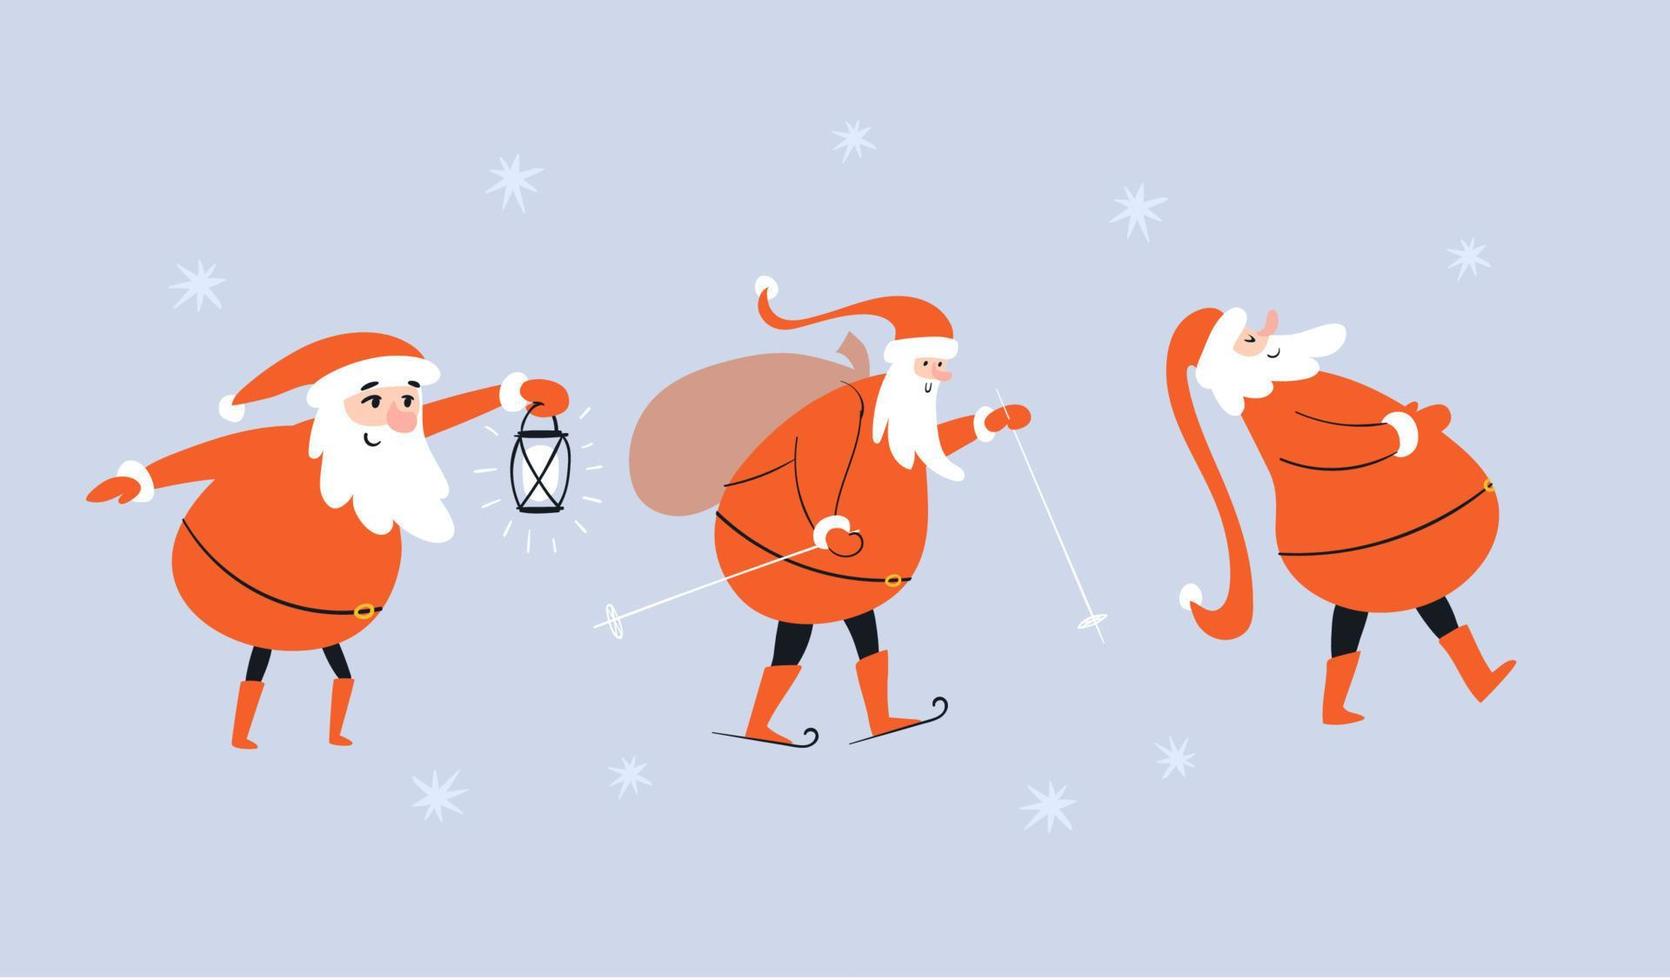 desenhado conjunto papai noel isolado. personagens de desenhos animados fofos papai noel com presentes, com uma lanterna e esqui. ilustração em vetor de pessoas de Natal em um fundo azul com estrelas.